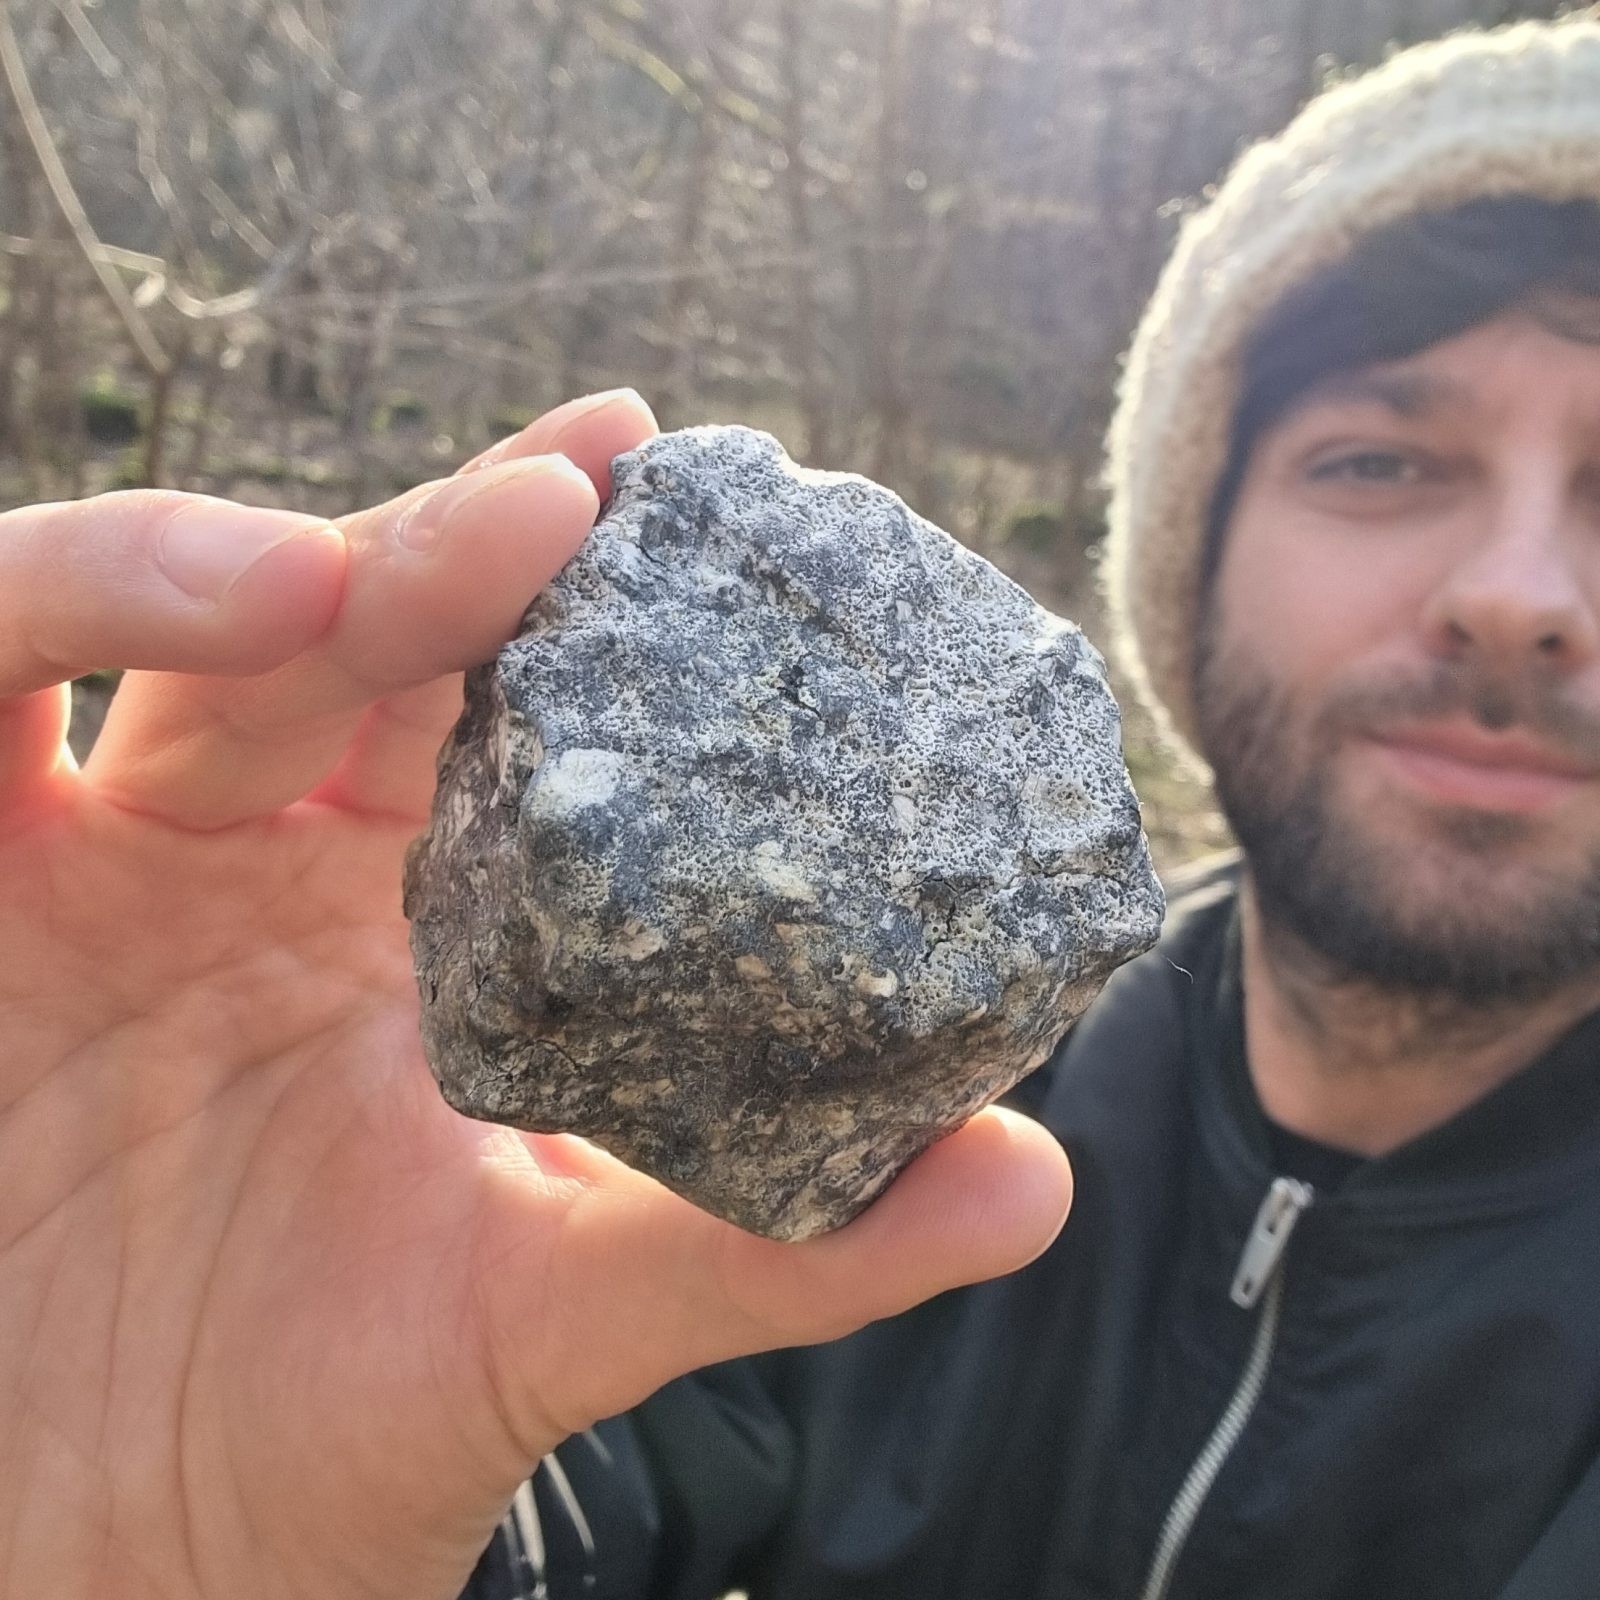 Kryspin Kmieciak trzyma w ręce znaleziony meteoryt / fot. Kryspin Kmieciak, za zgodą autora
